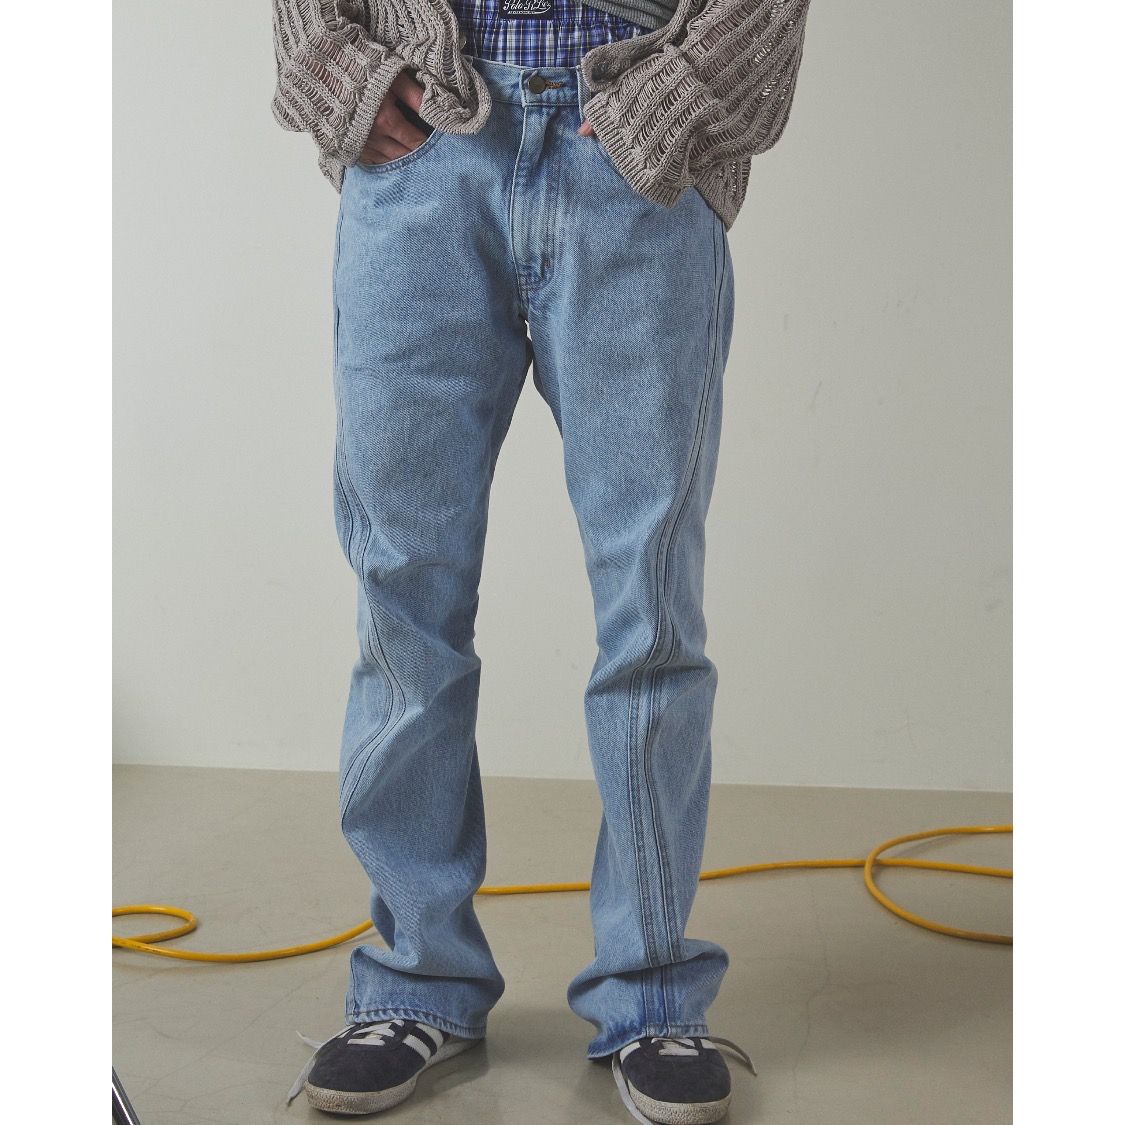 注目の福袋！ 1(S) Jeans 【NVRFRGT】3D Twisted Jeans NVRFRGT 1size ...